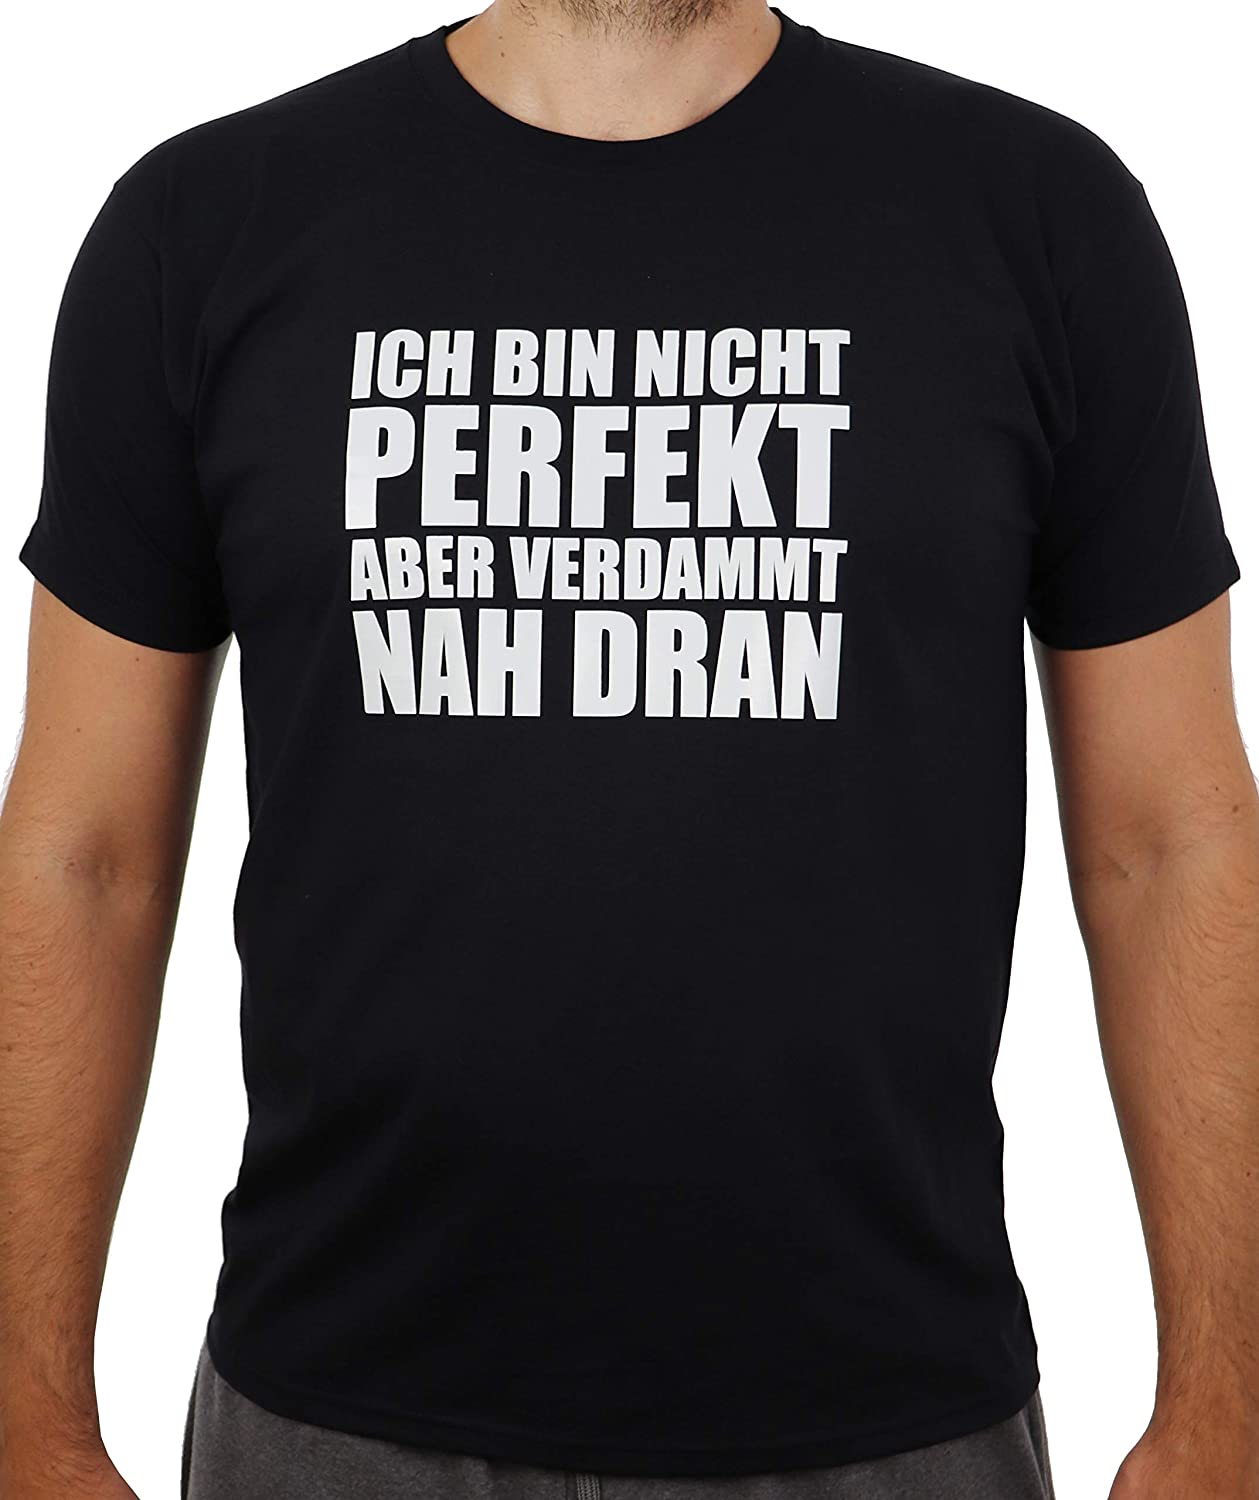 Schwarzes T-Shirt mit weissem Aufdruck Ich Bin Nicht perfekt Aber verdammt nah dran, Funshirt, Spass-T-Shirt